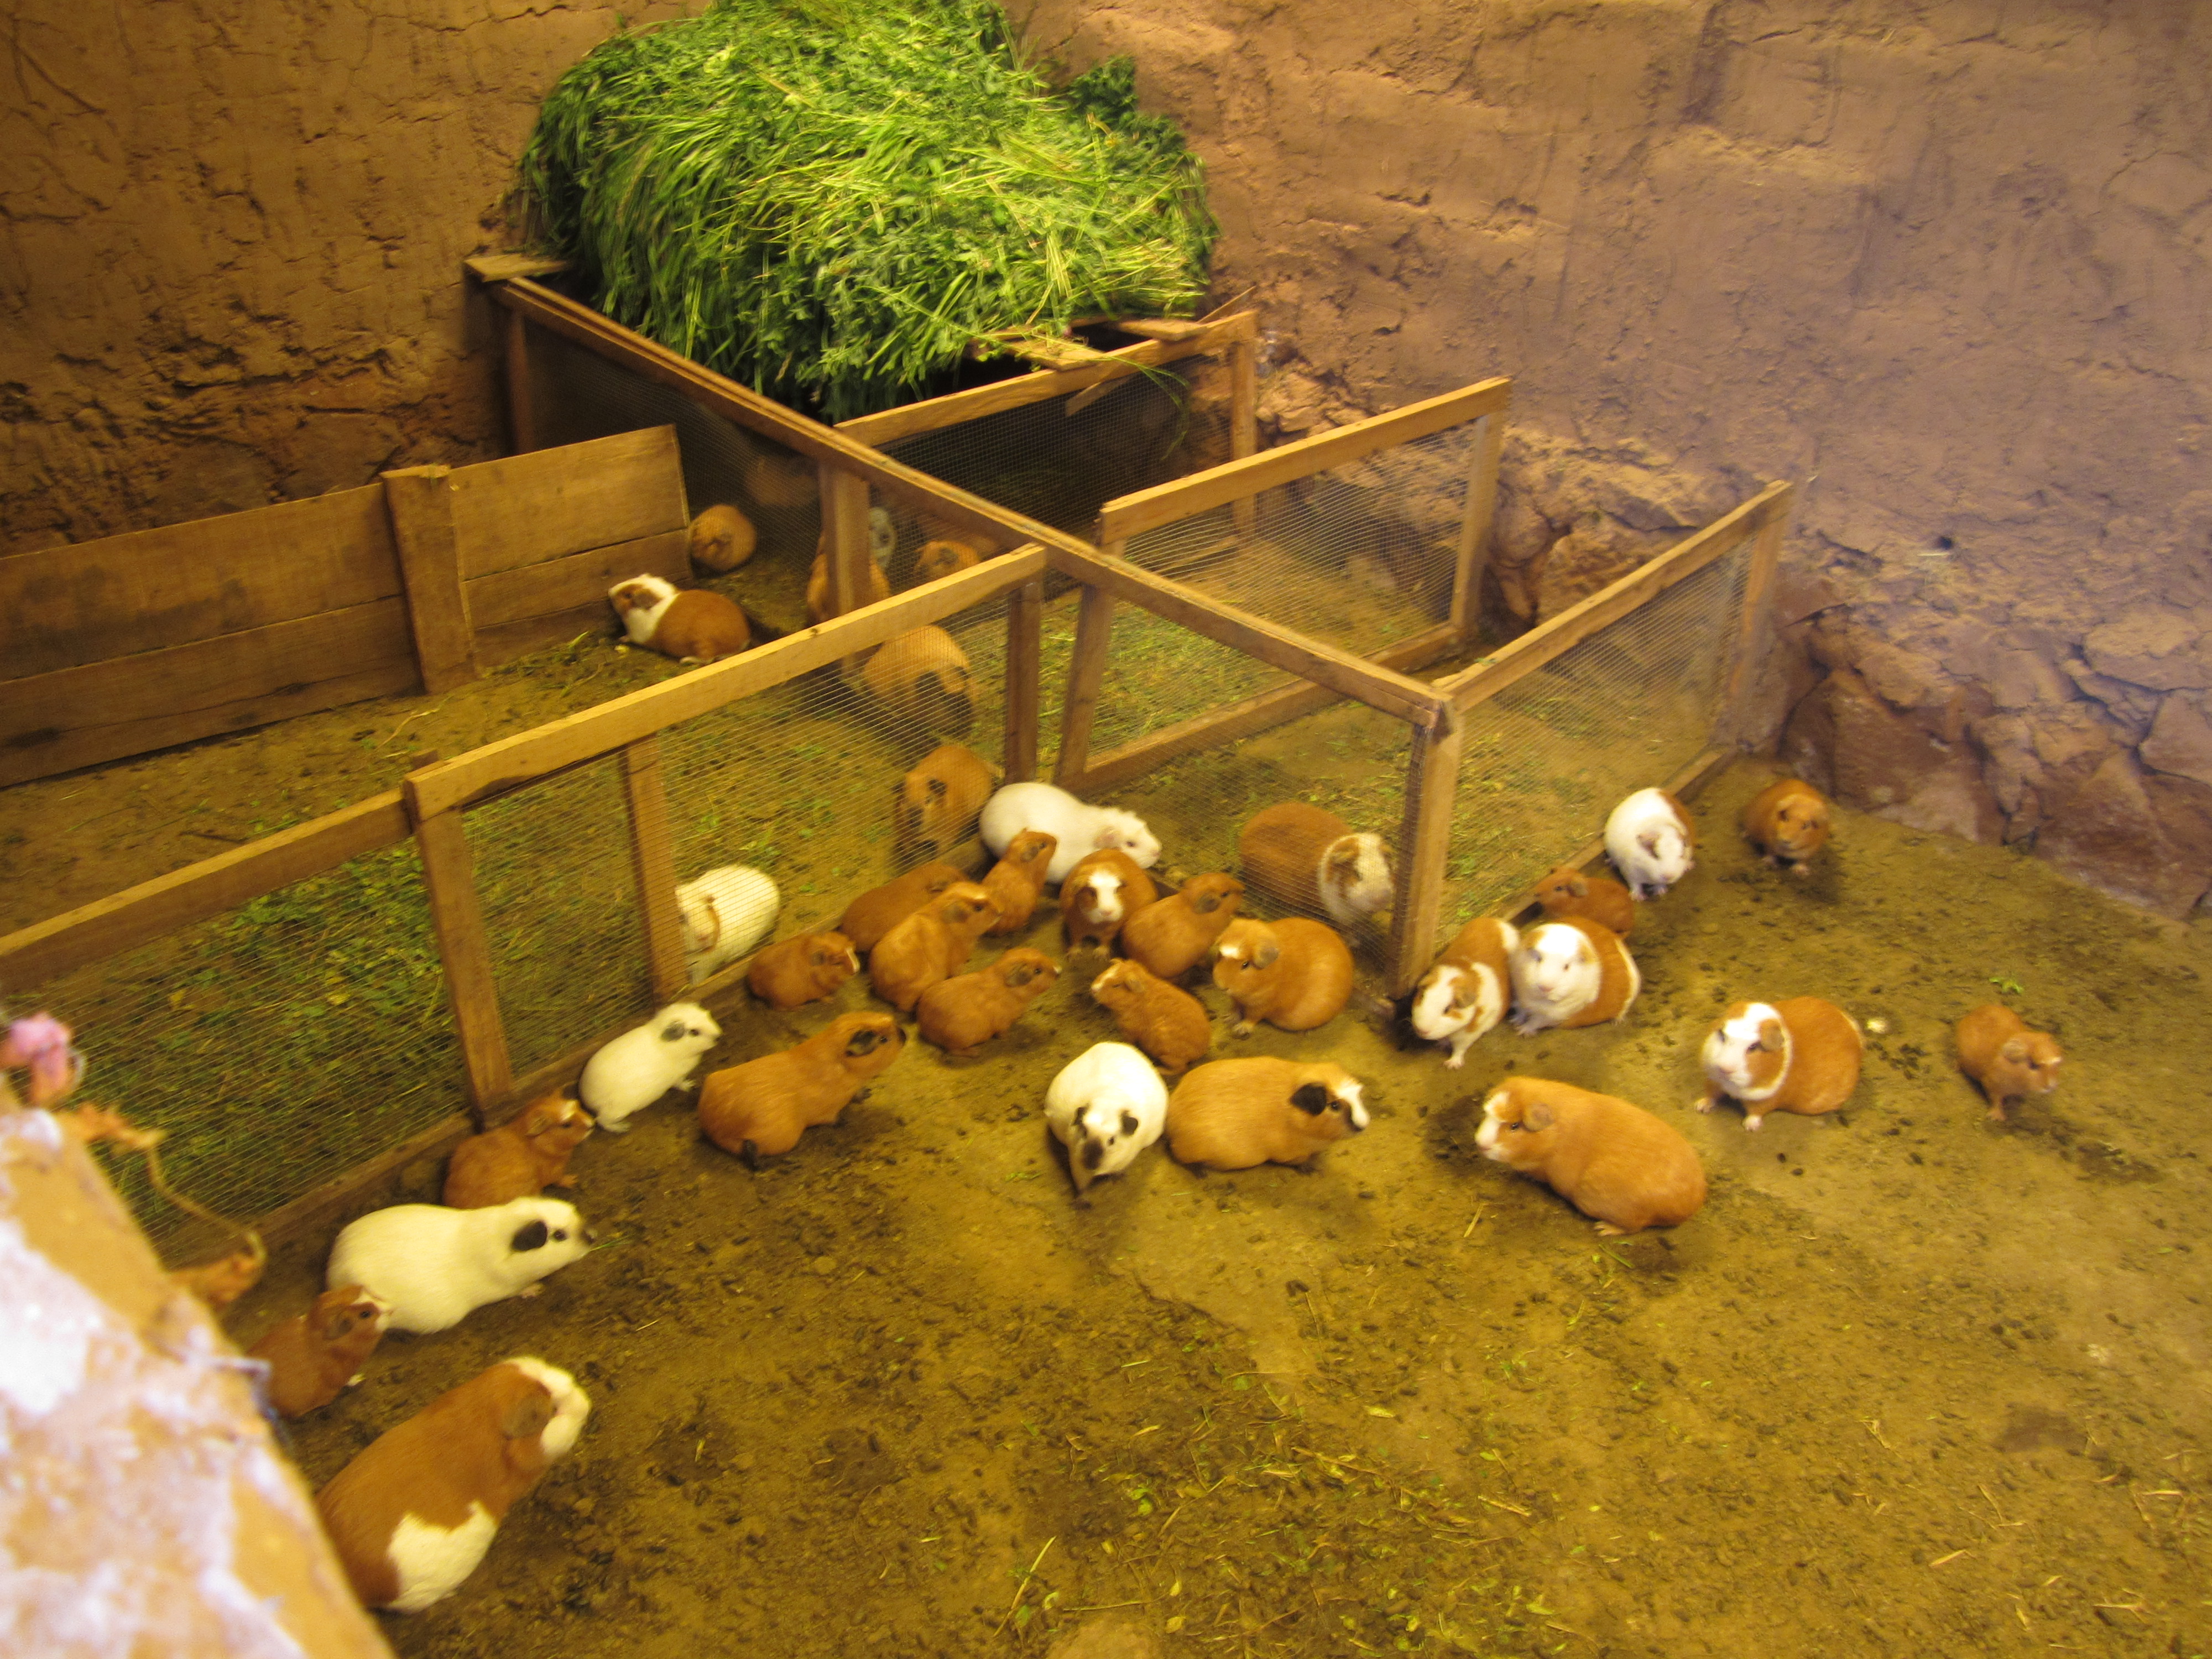 Peruvian Guinea Pigs